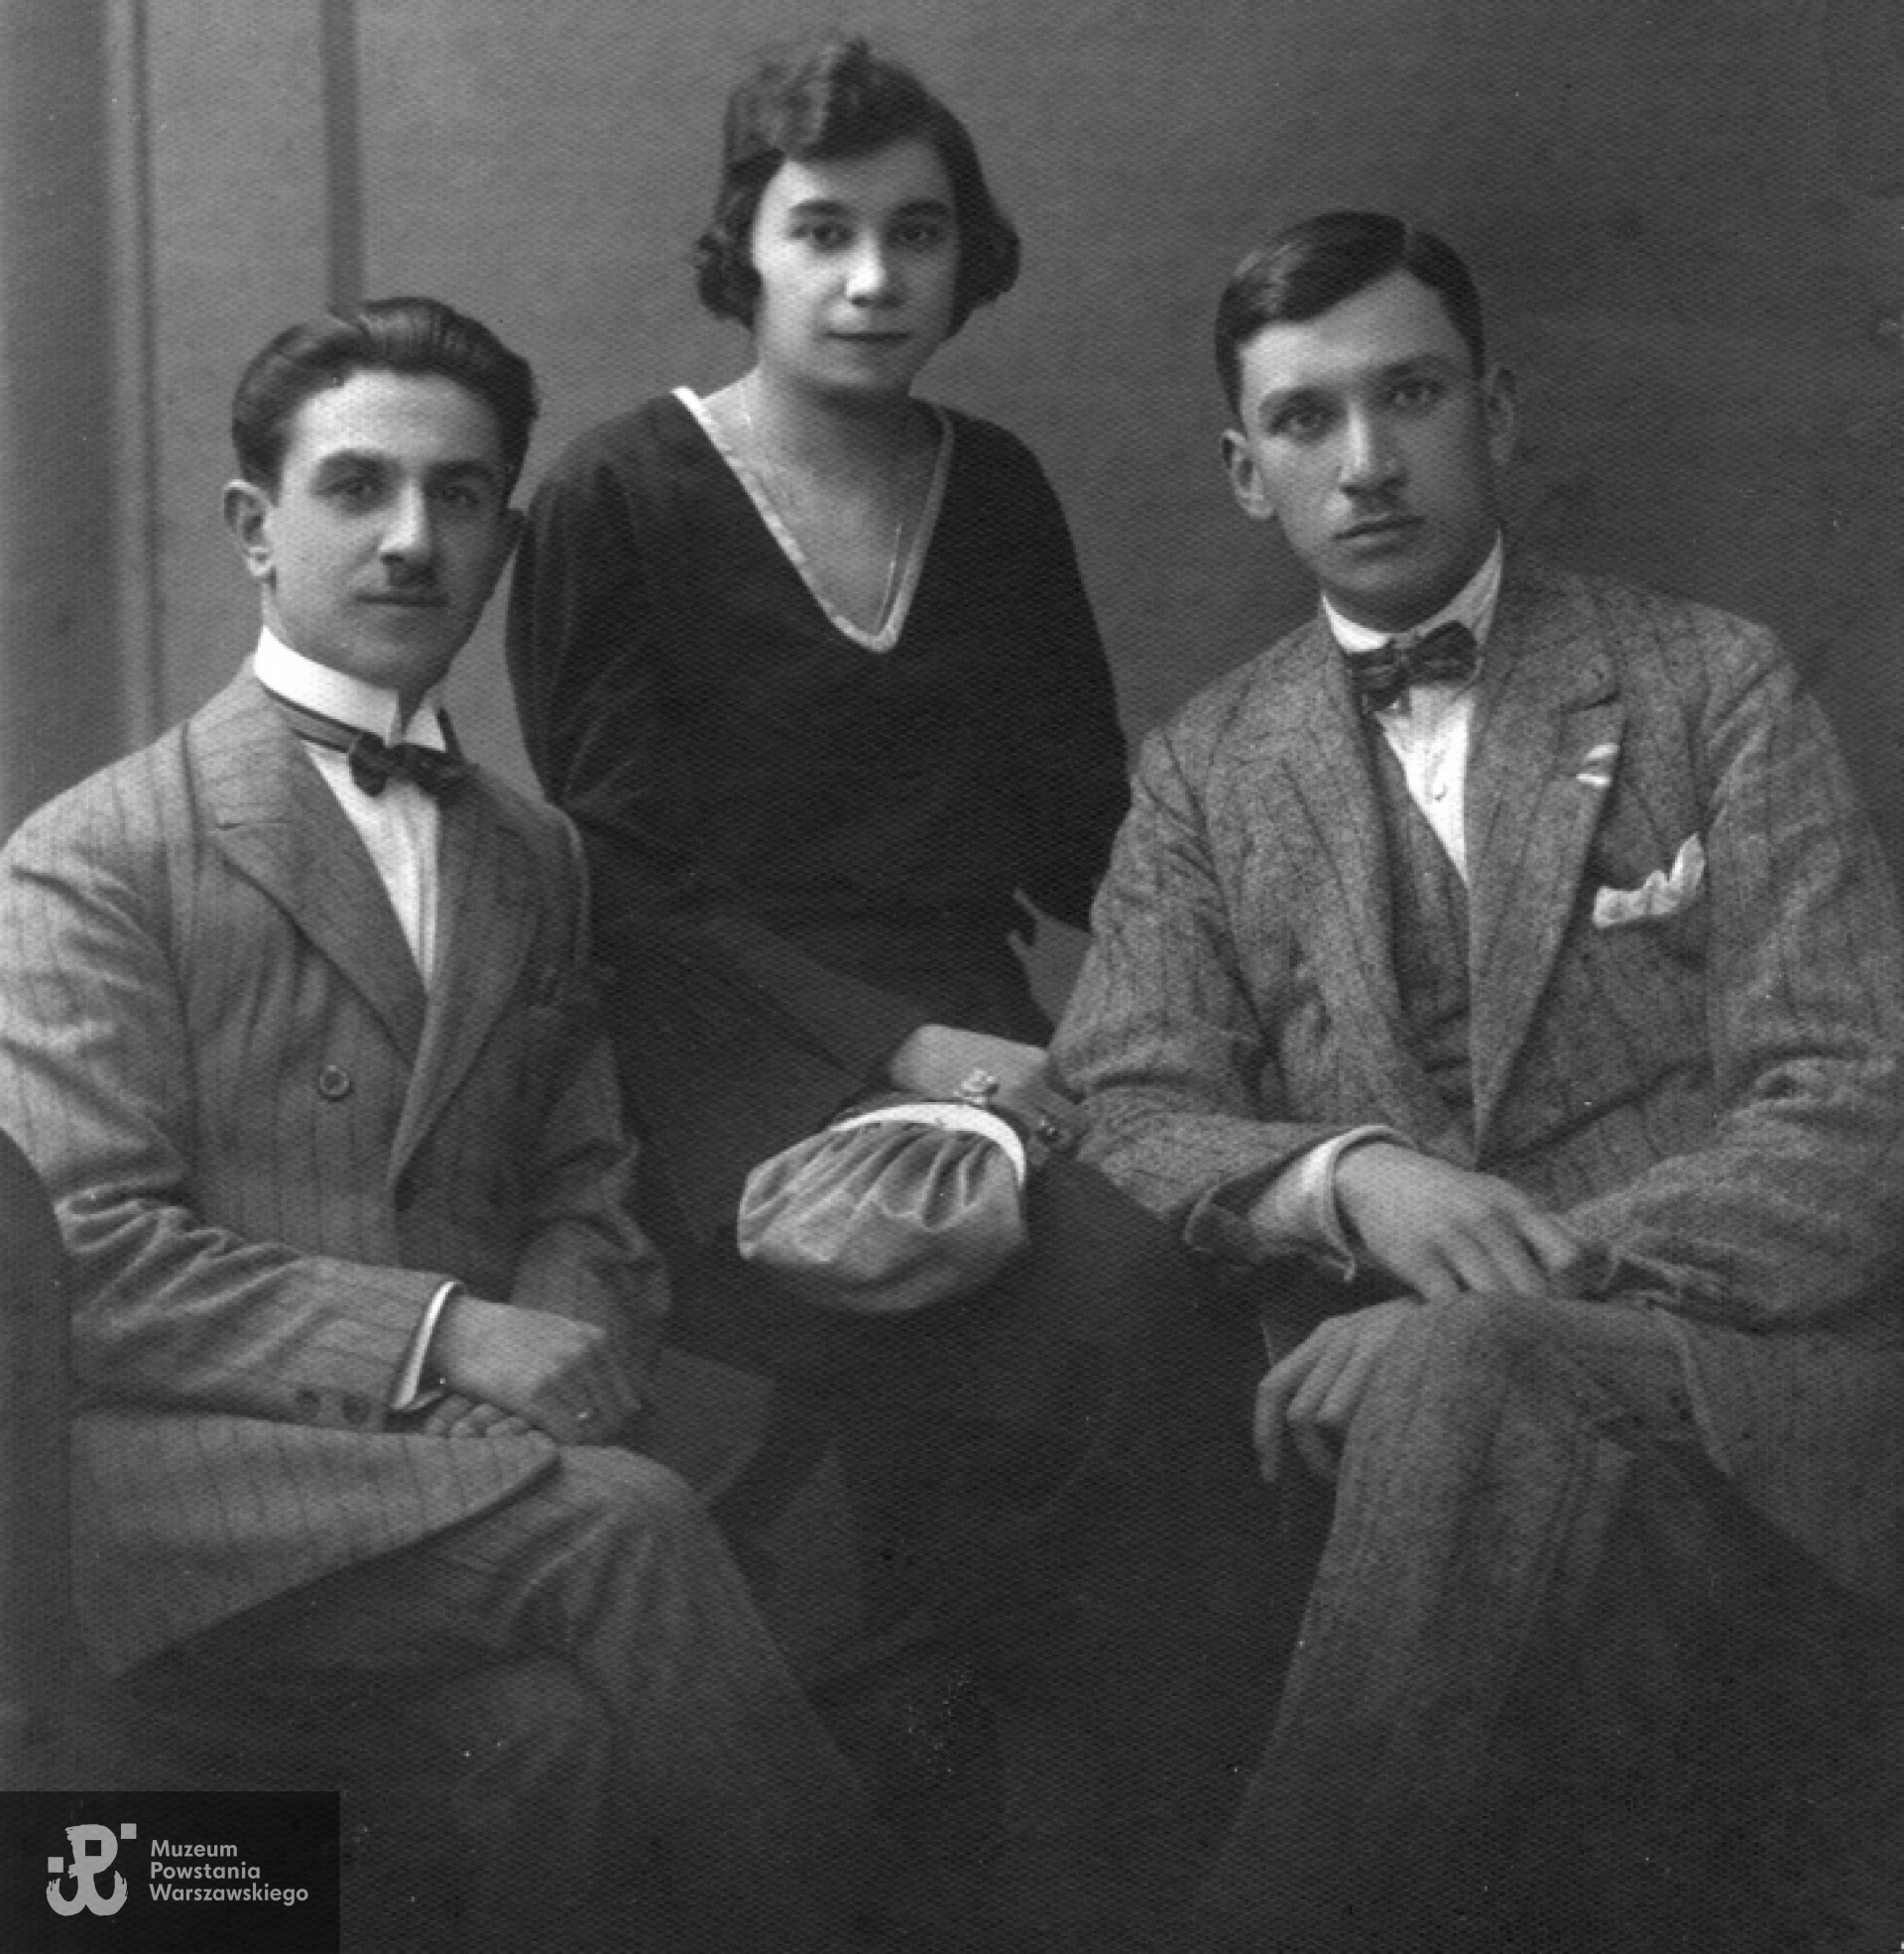 Od prawej siedzą: Edmund Rzewuski i jego siostra Aleksandra z mężem Antonim Gilewskim, zdjęcie wykonano ok. 1930 r.